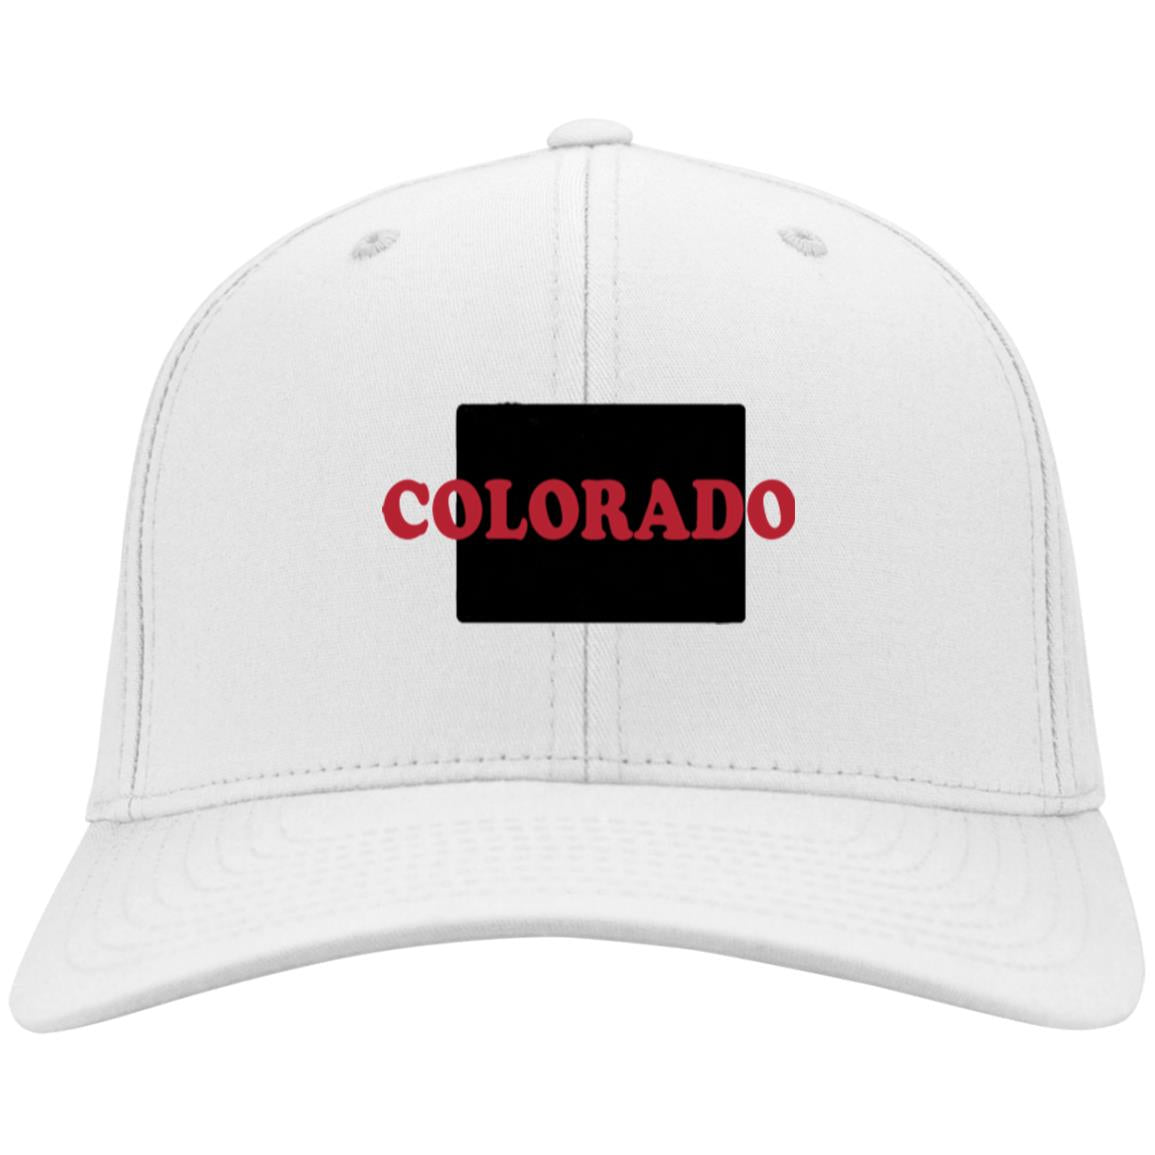 COLORADO HAT | KC WOW WARES